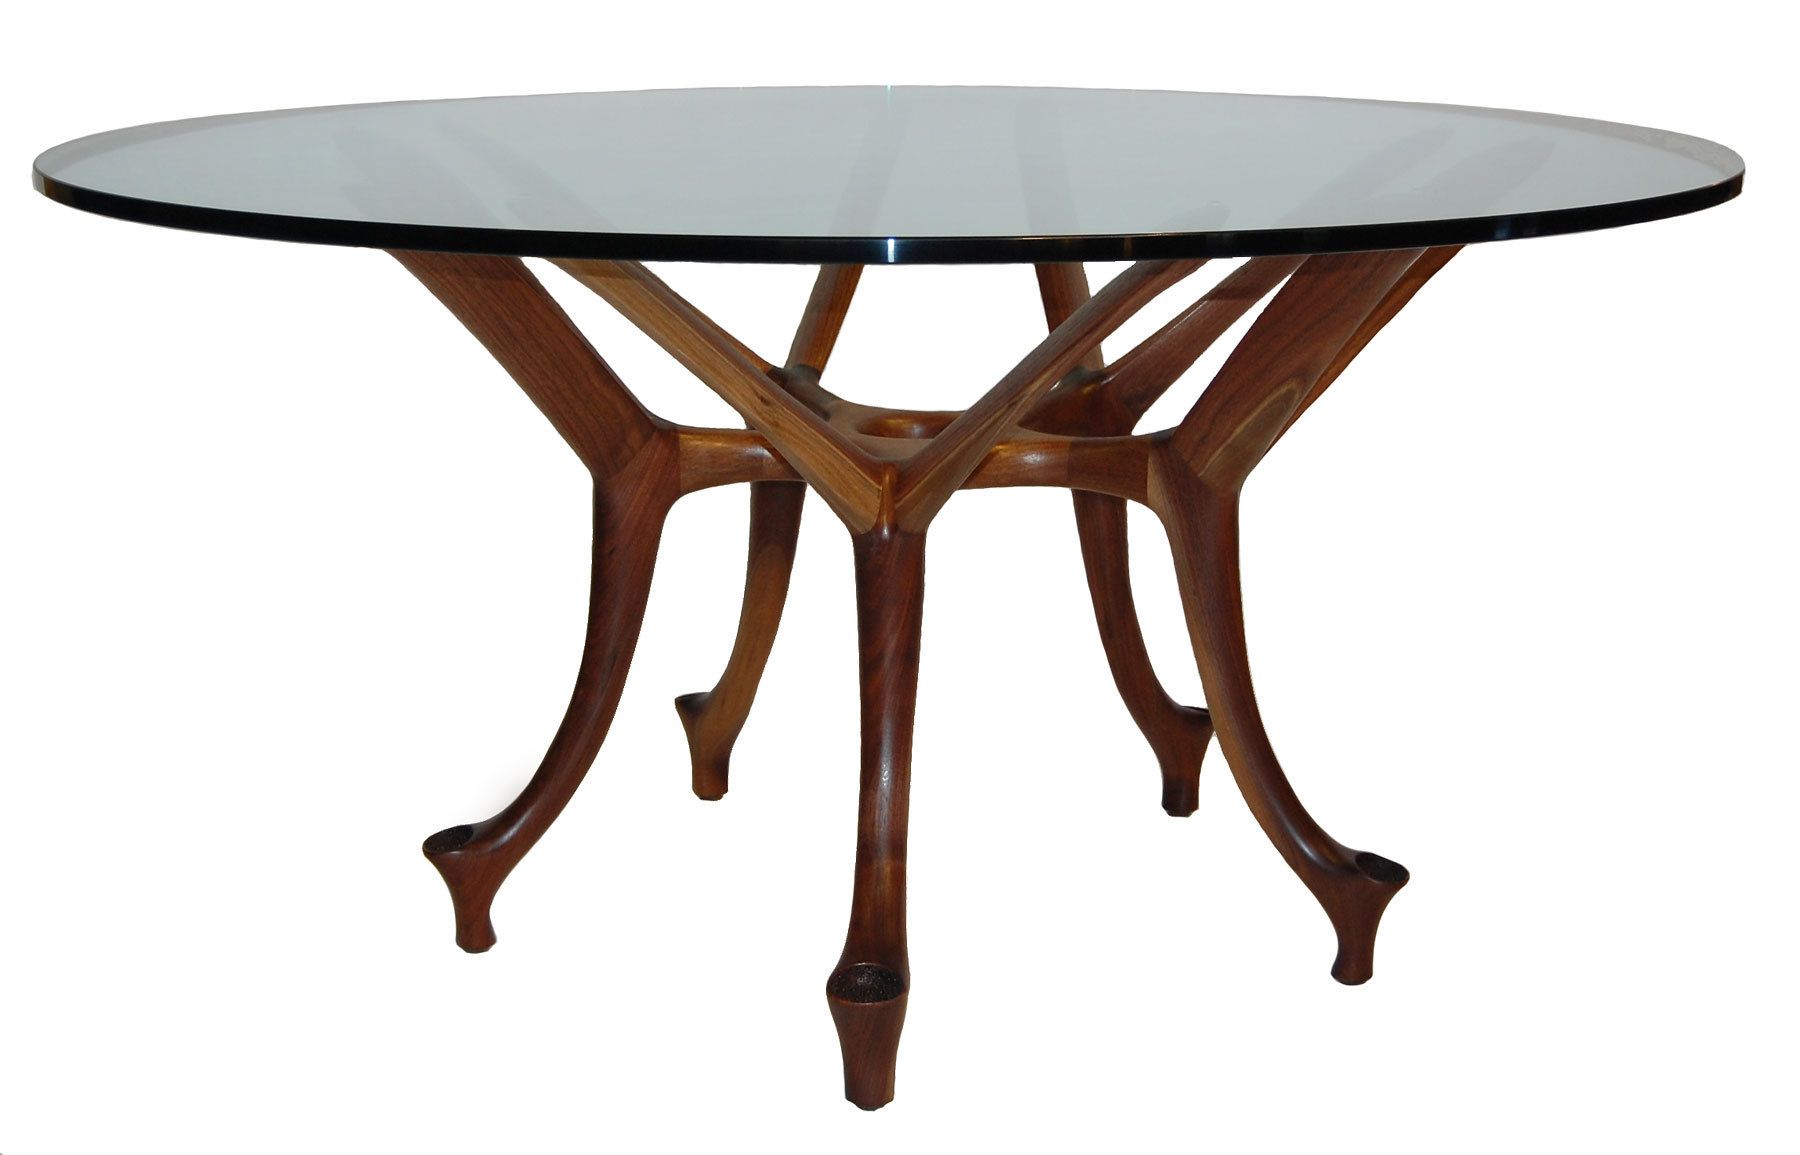 Malabar table